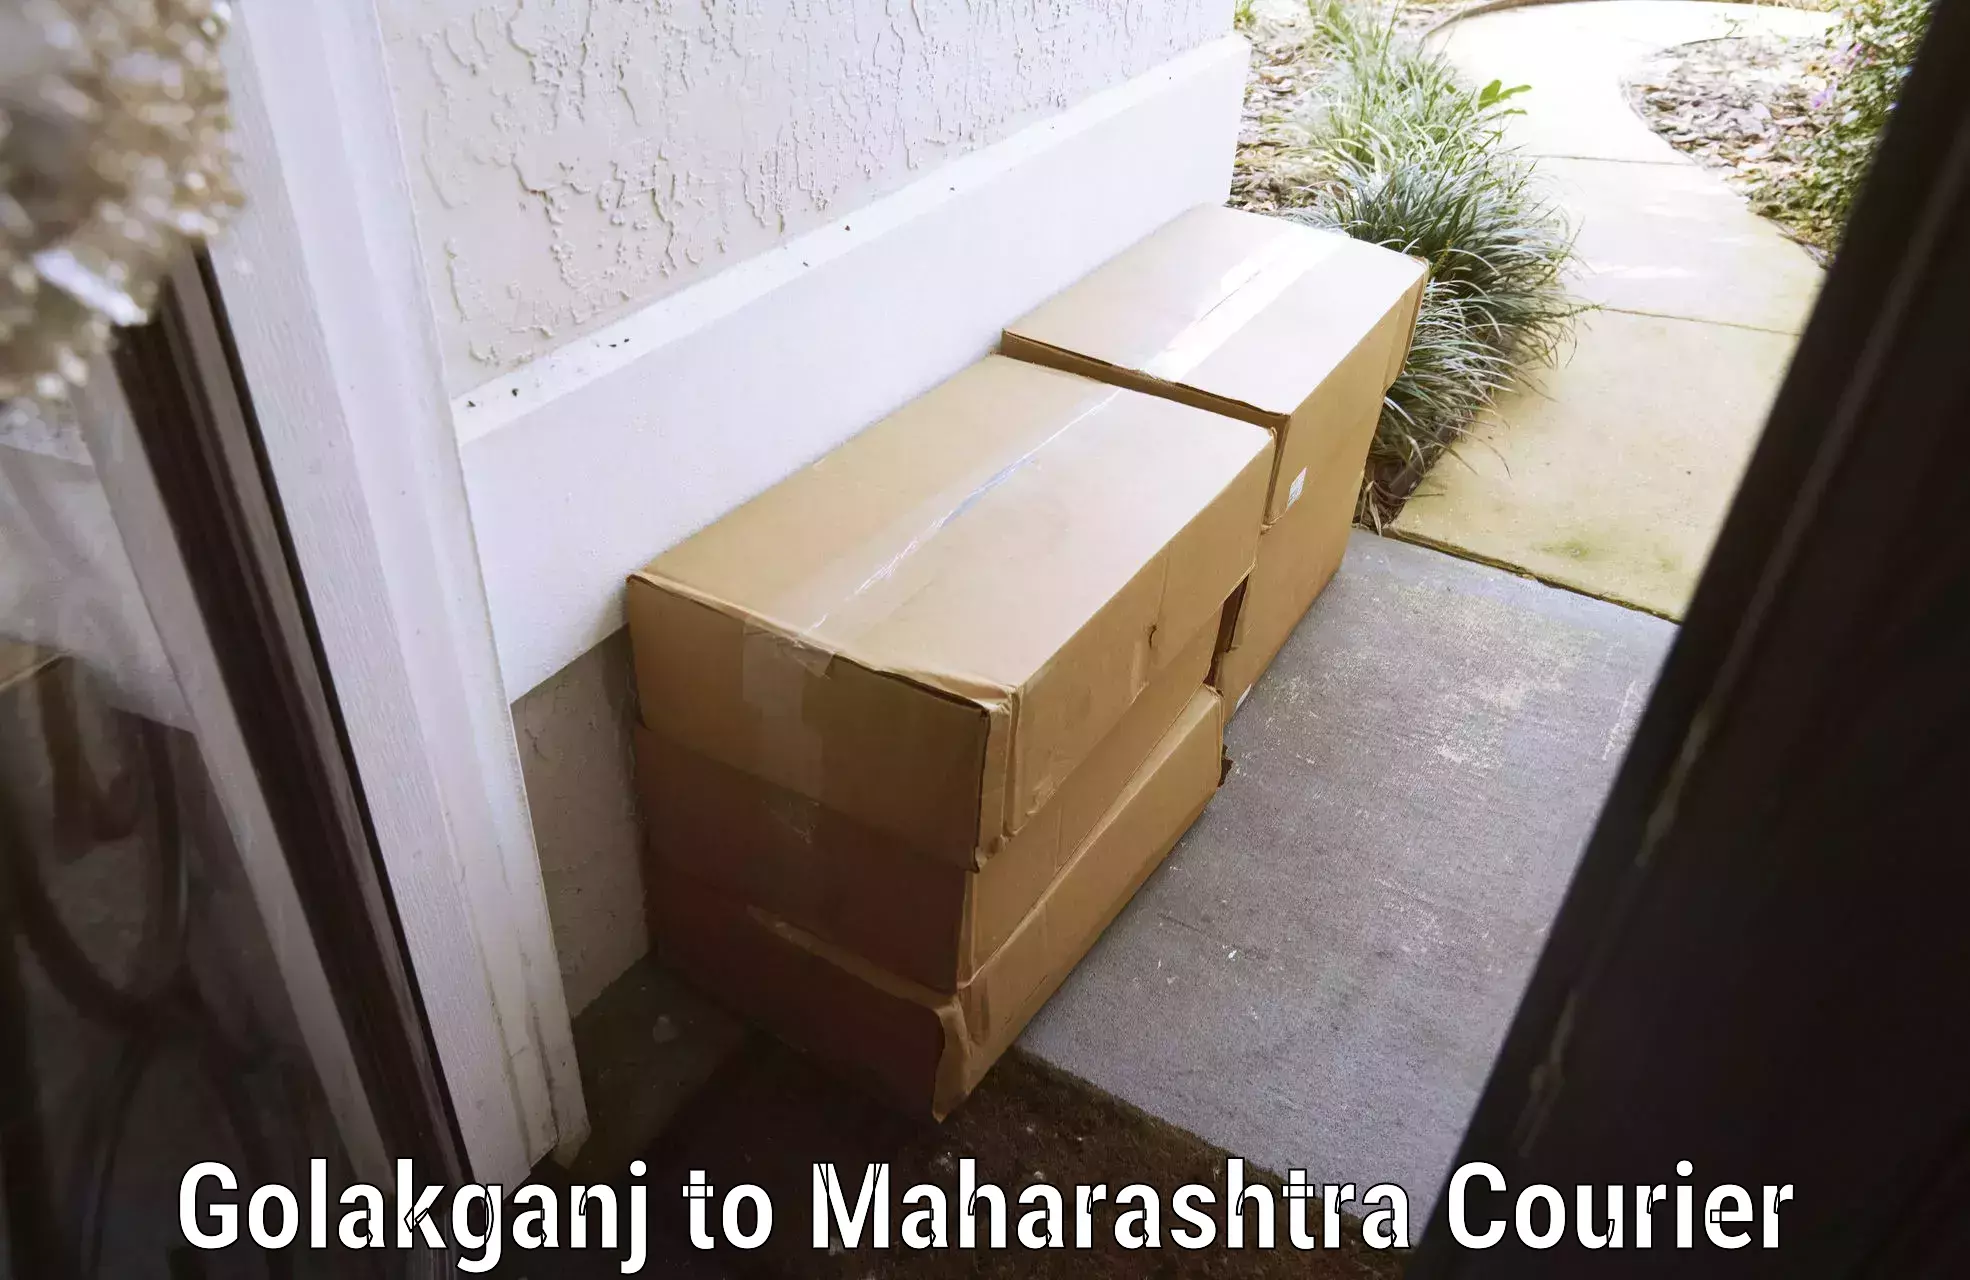 Door-to-door baggage service Golakganj to Vairag